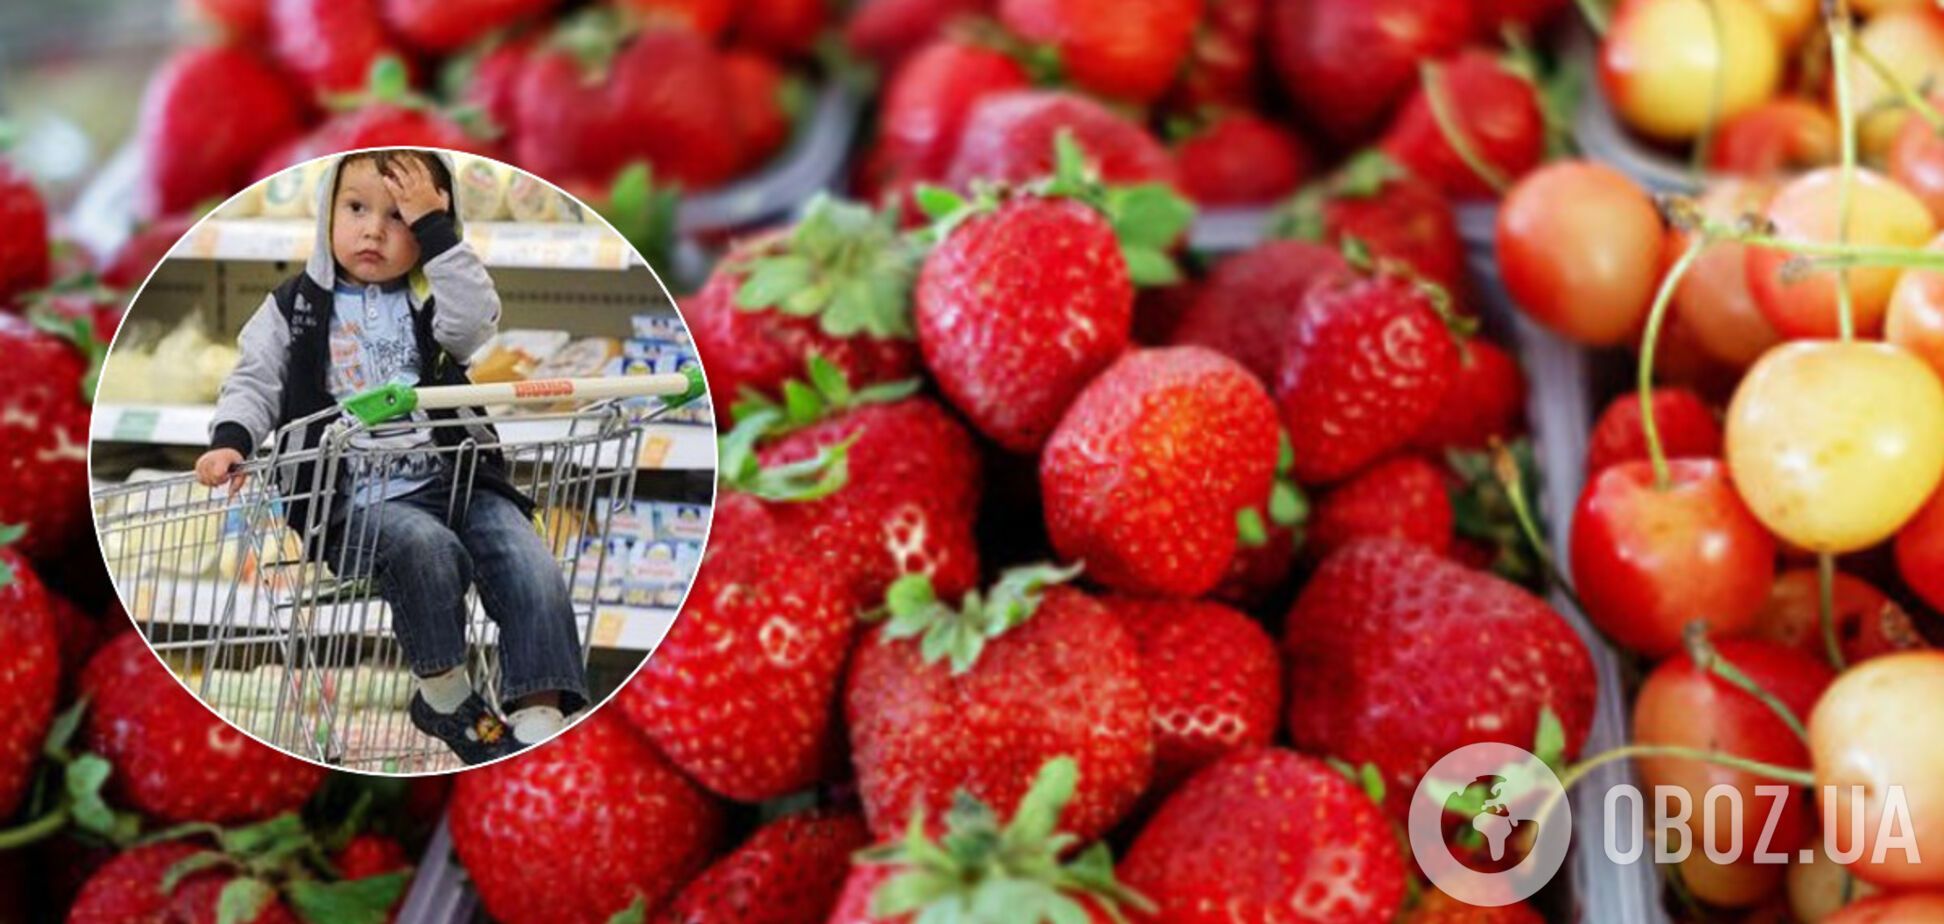 Цены на фрукты и ягоды в Украине побили абсолютный рекорд: что и на сколько подорожало